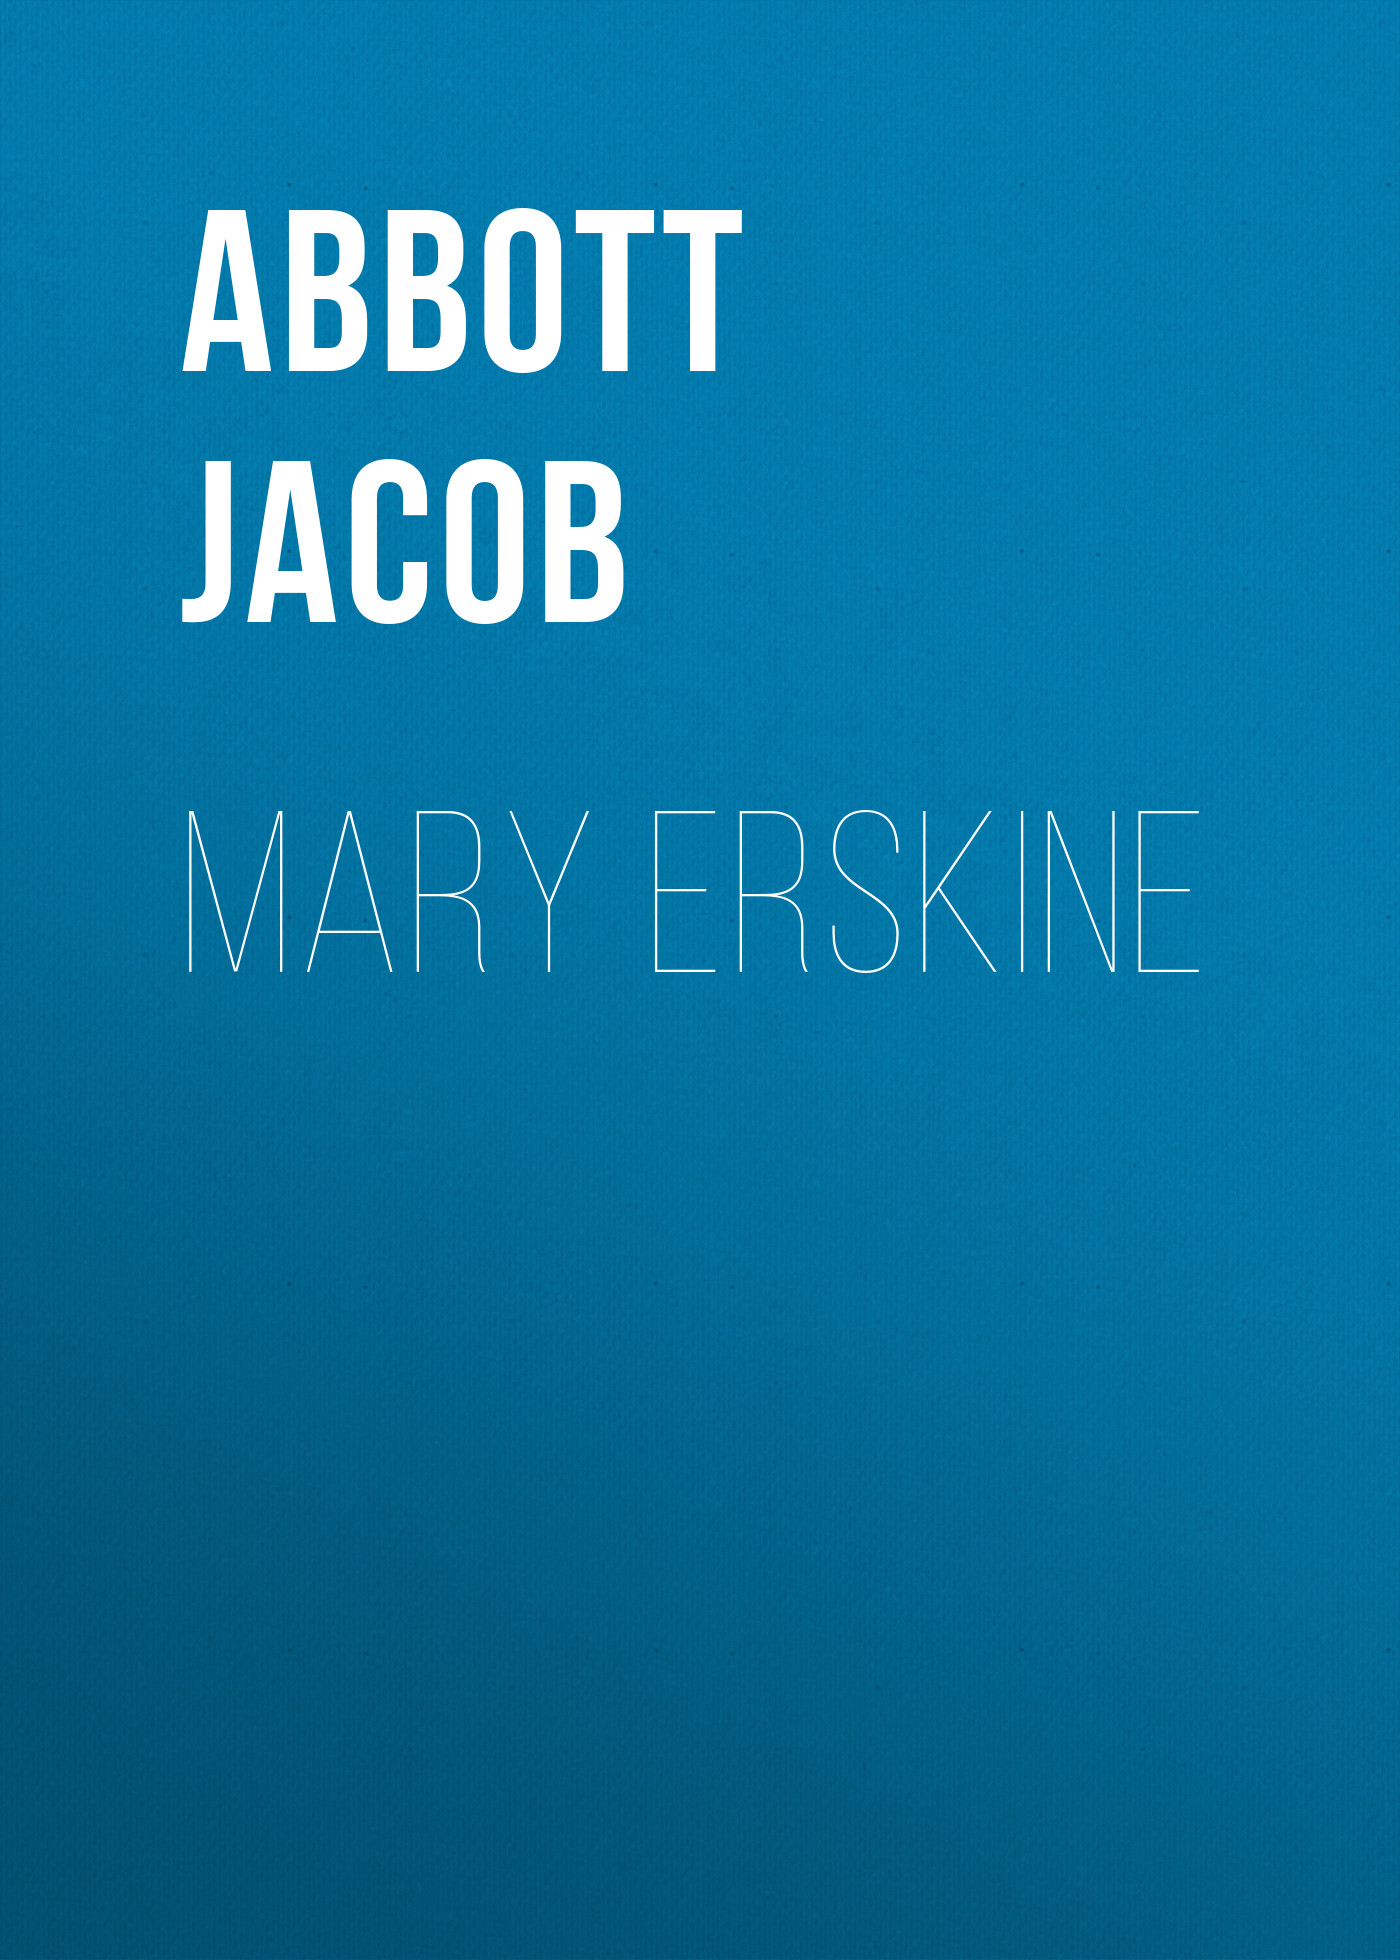 Книга Mary Erskine из серии , созданная Jacob Abbott, может относится к жанру Зарубежная классика, Литература 19 века, Зарубежная старинная литература. Стоимость электронной книги Mary Erskine с идентификатором 36367150 составляет 0 руб.